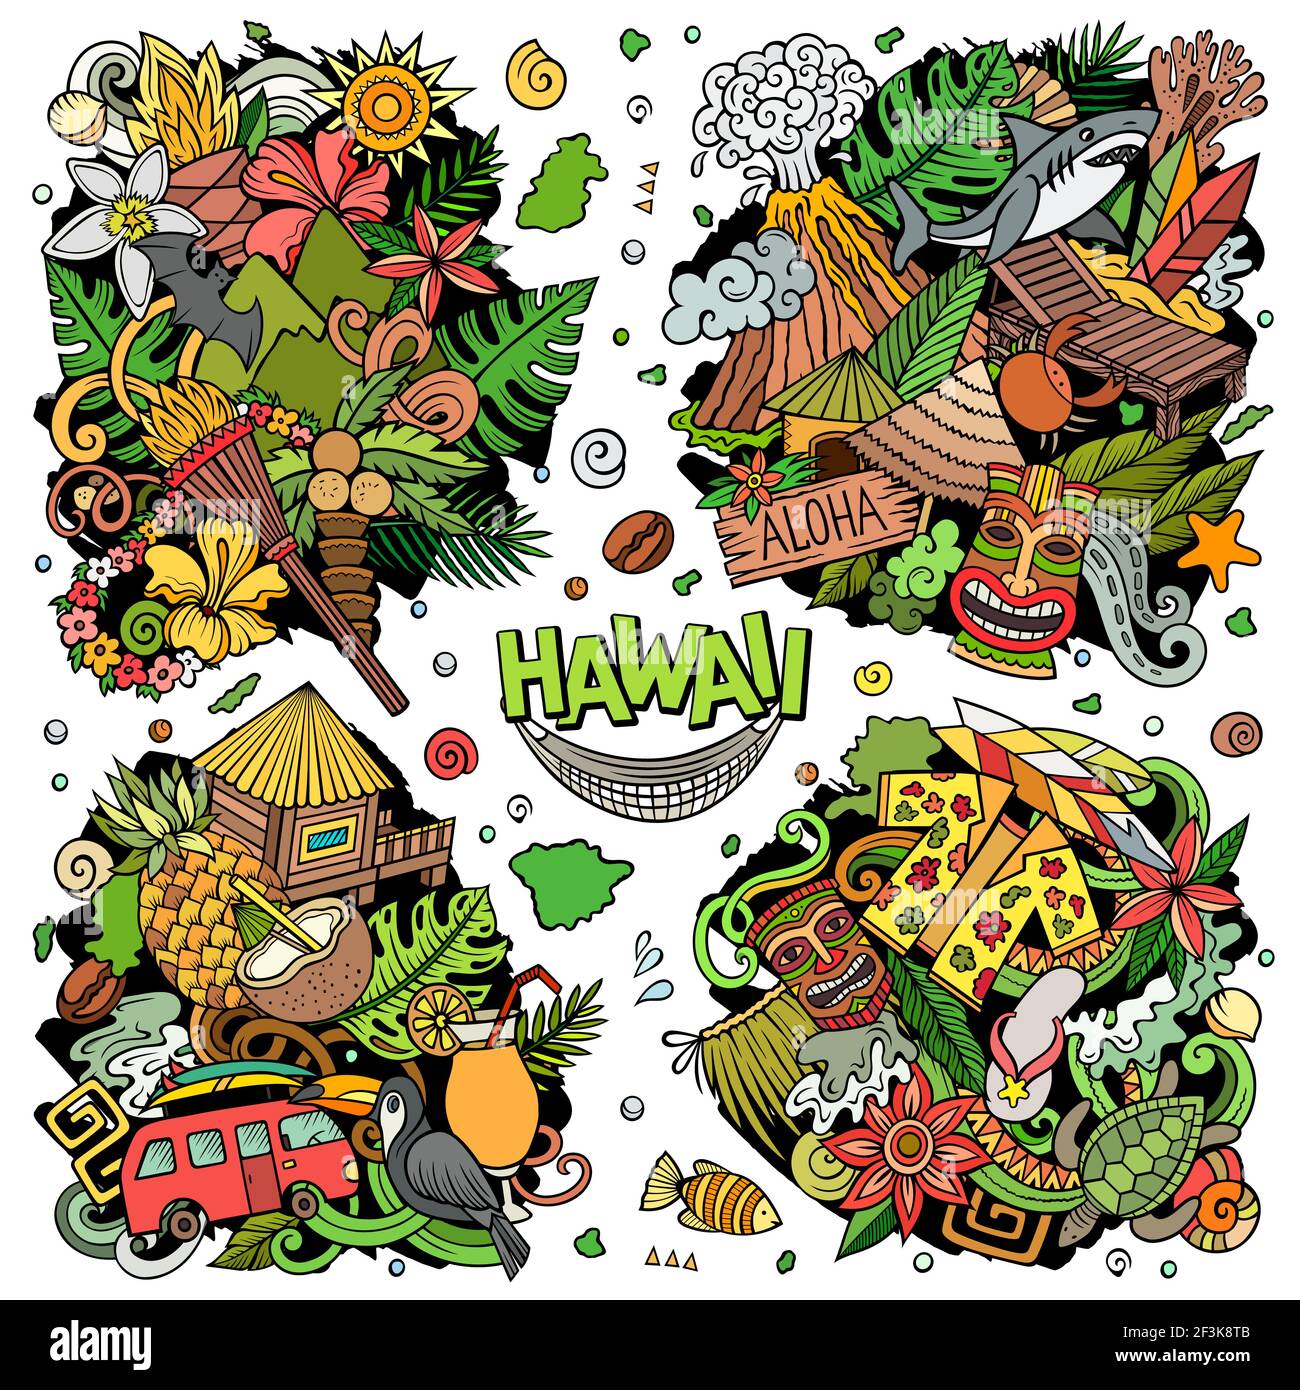 Hawaii Cartoon Vektor Doodle Designs Set. Farbenfrohe, detailreiche Kompositionen mit vielen hawaiianischen Objekten und Symbolen. Alle Elemente sind getrennt Stock Vektor